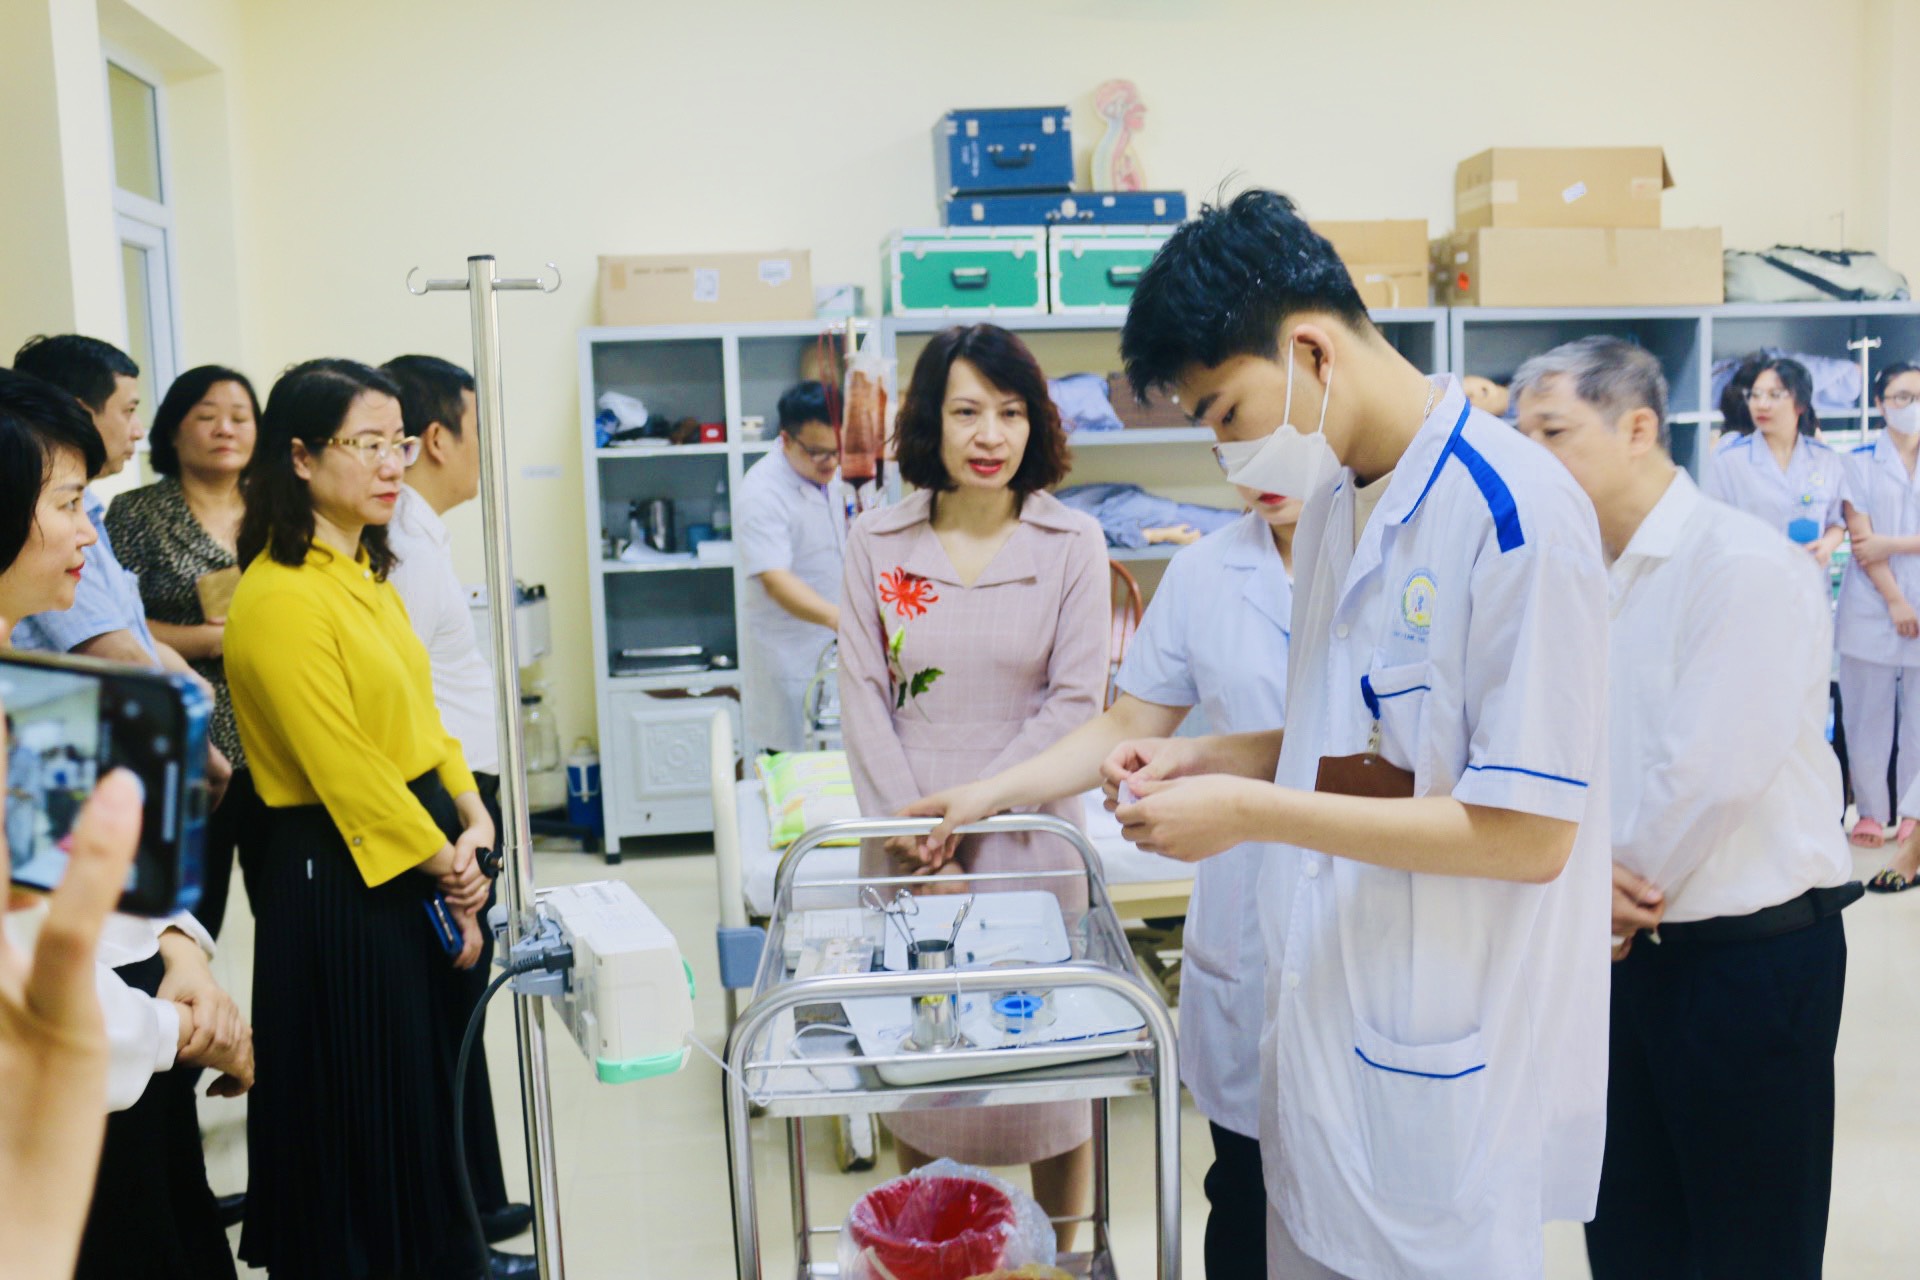 Đại học Điều dưỡng Nam Định rà soát chương trình đào tạo, tiếp tục đổi mới dạy đáp ứng hội nhập - Ảnh 1.